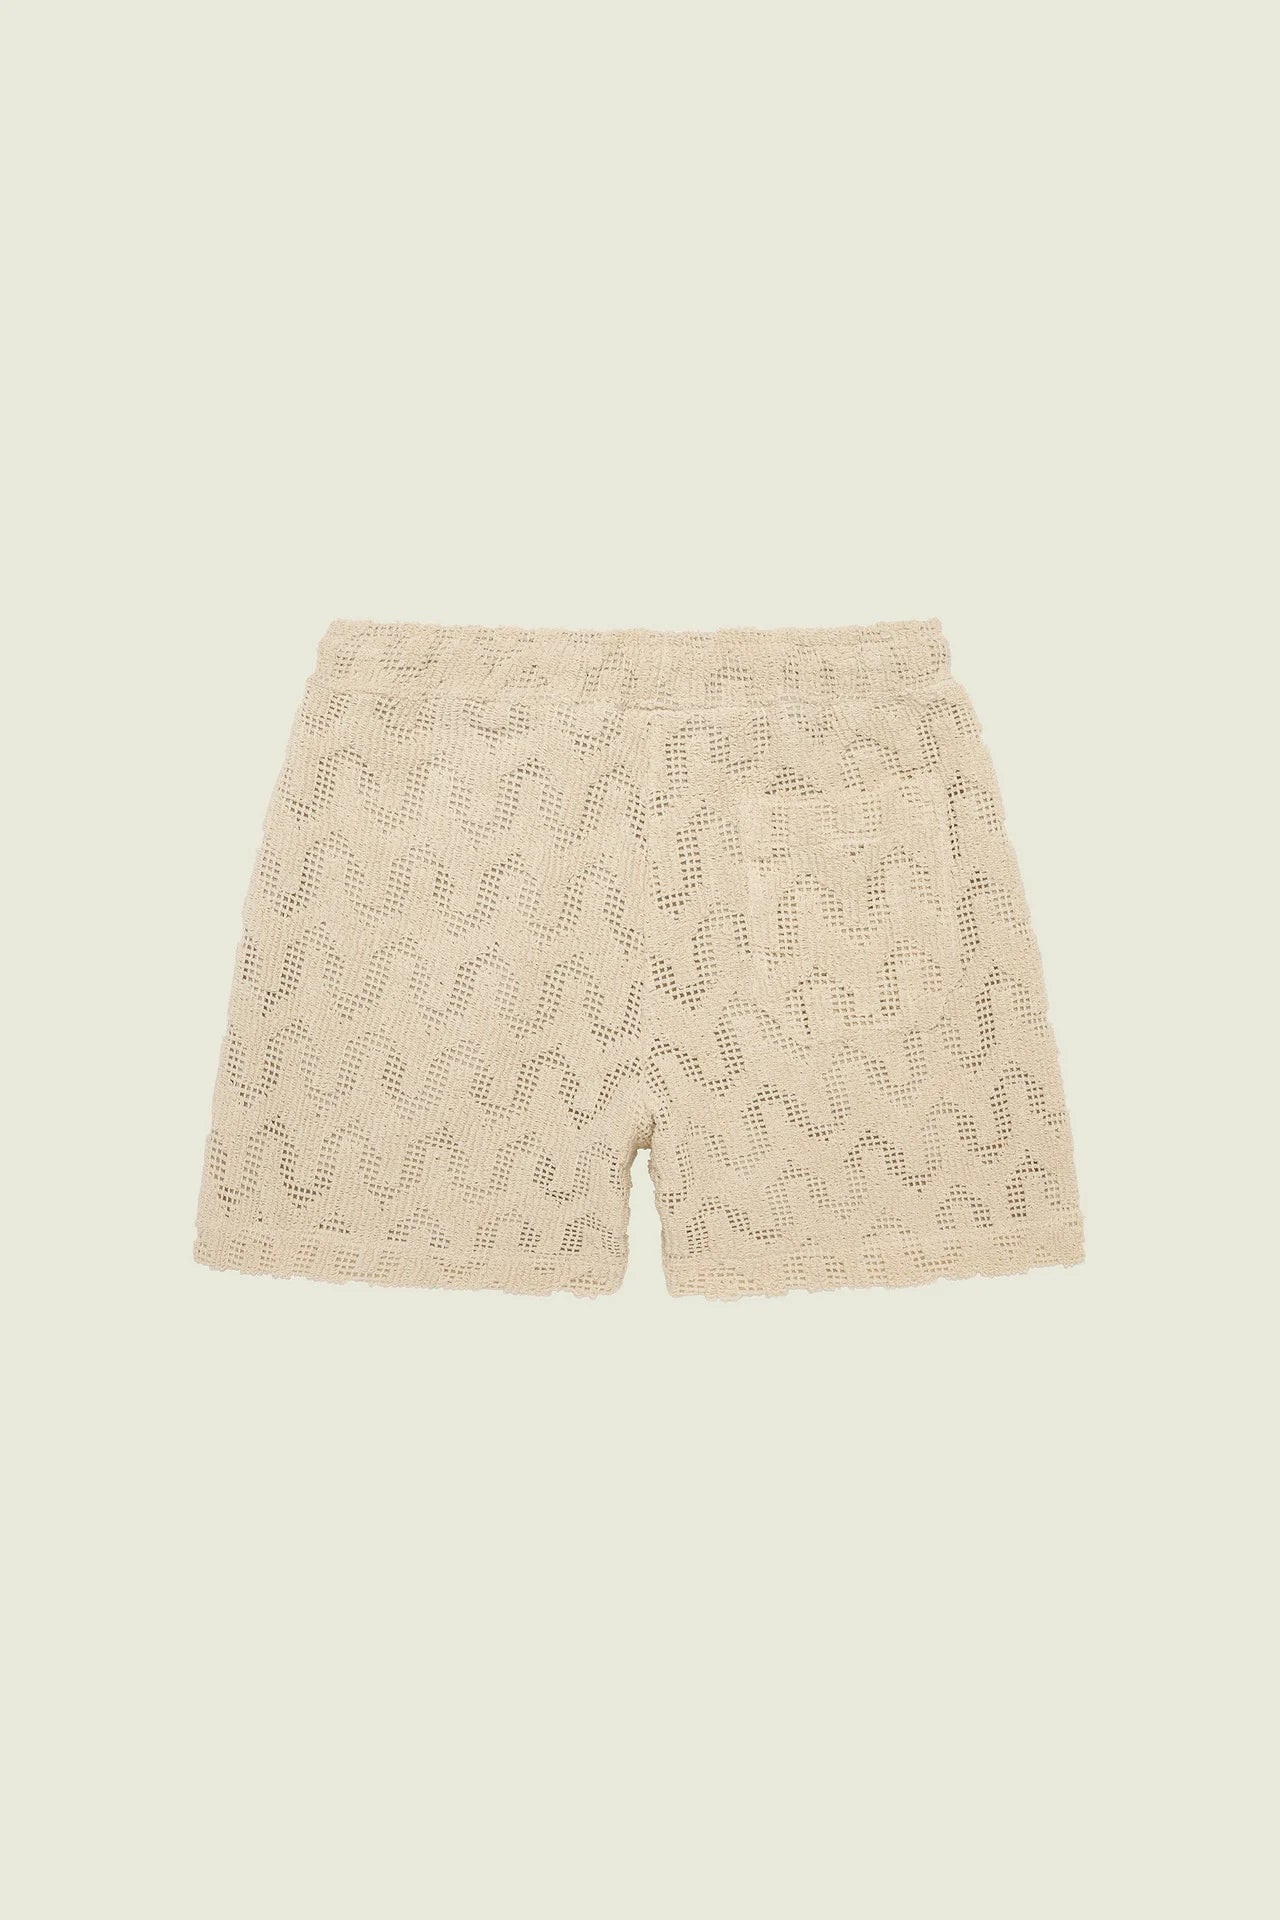 Oas Atlas Crochet Shorts